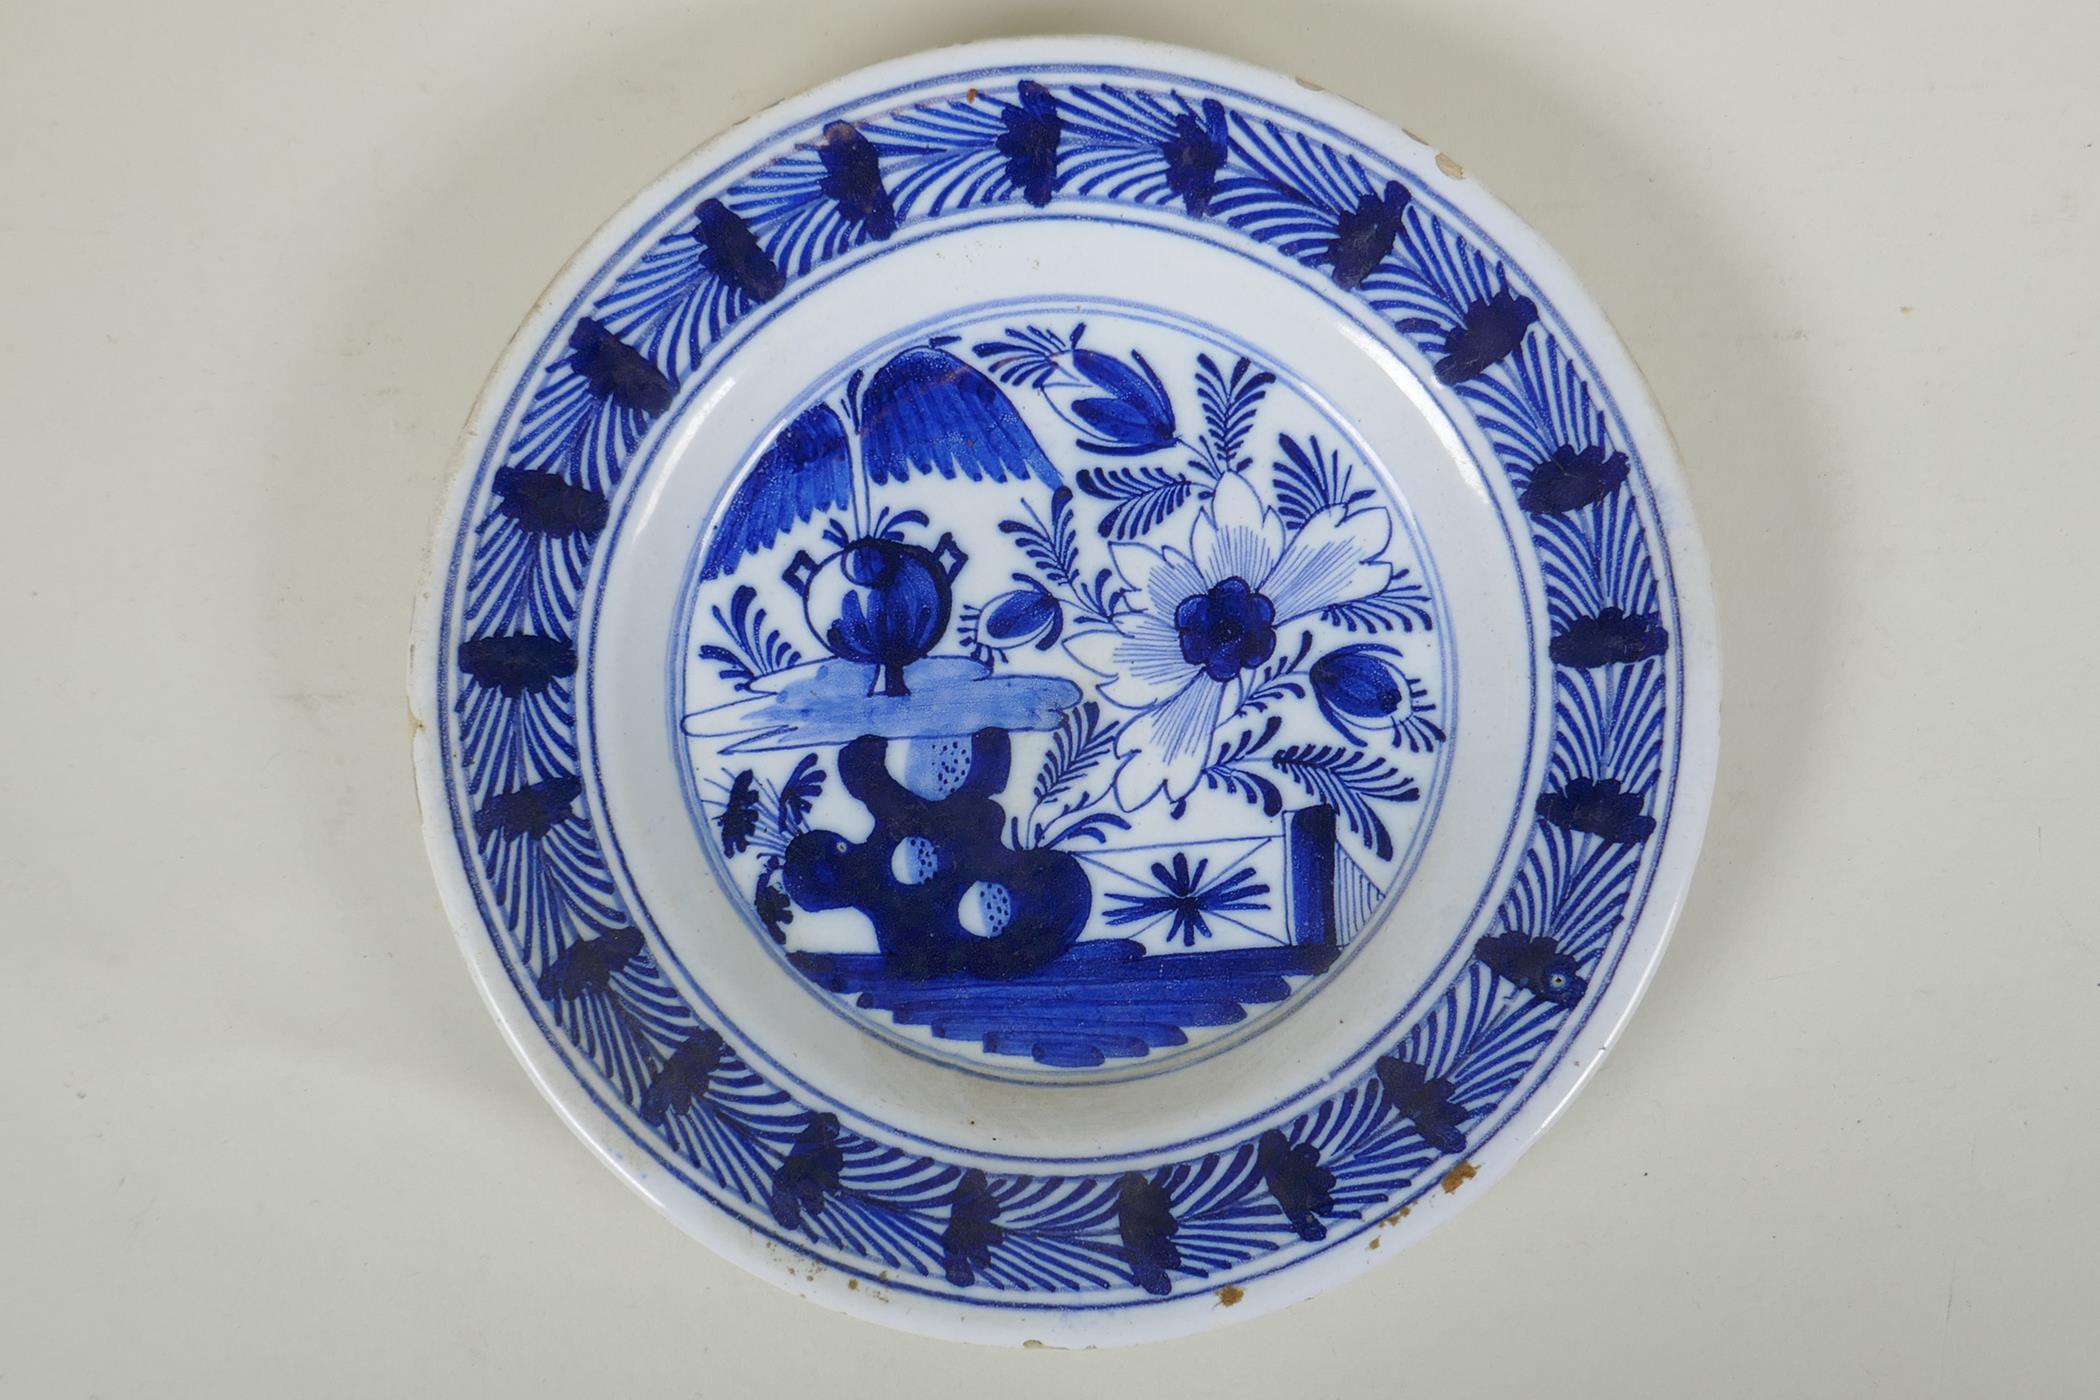 An C18th Dutch Delft blue plate with floral decoration, 23cm diameter